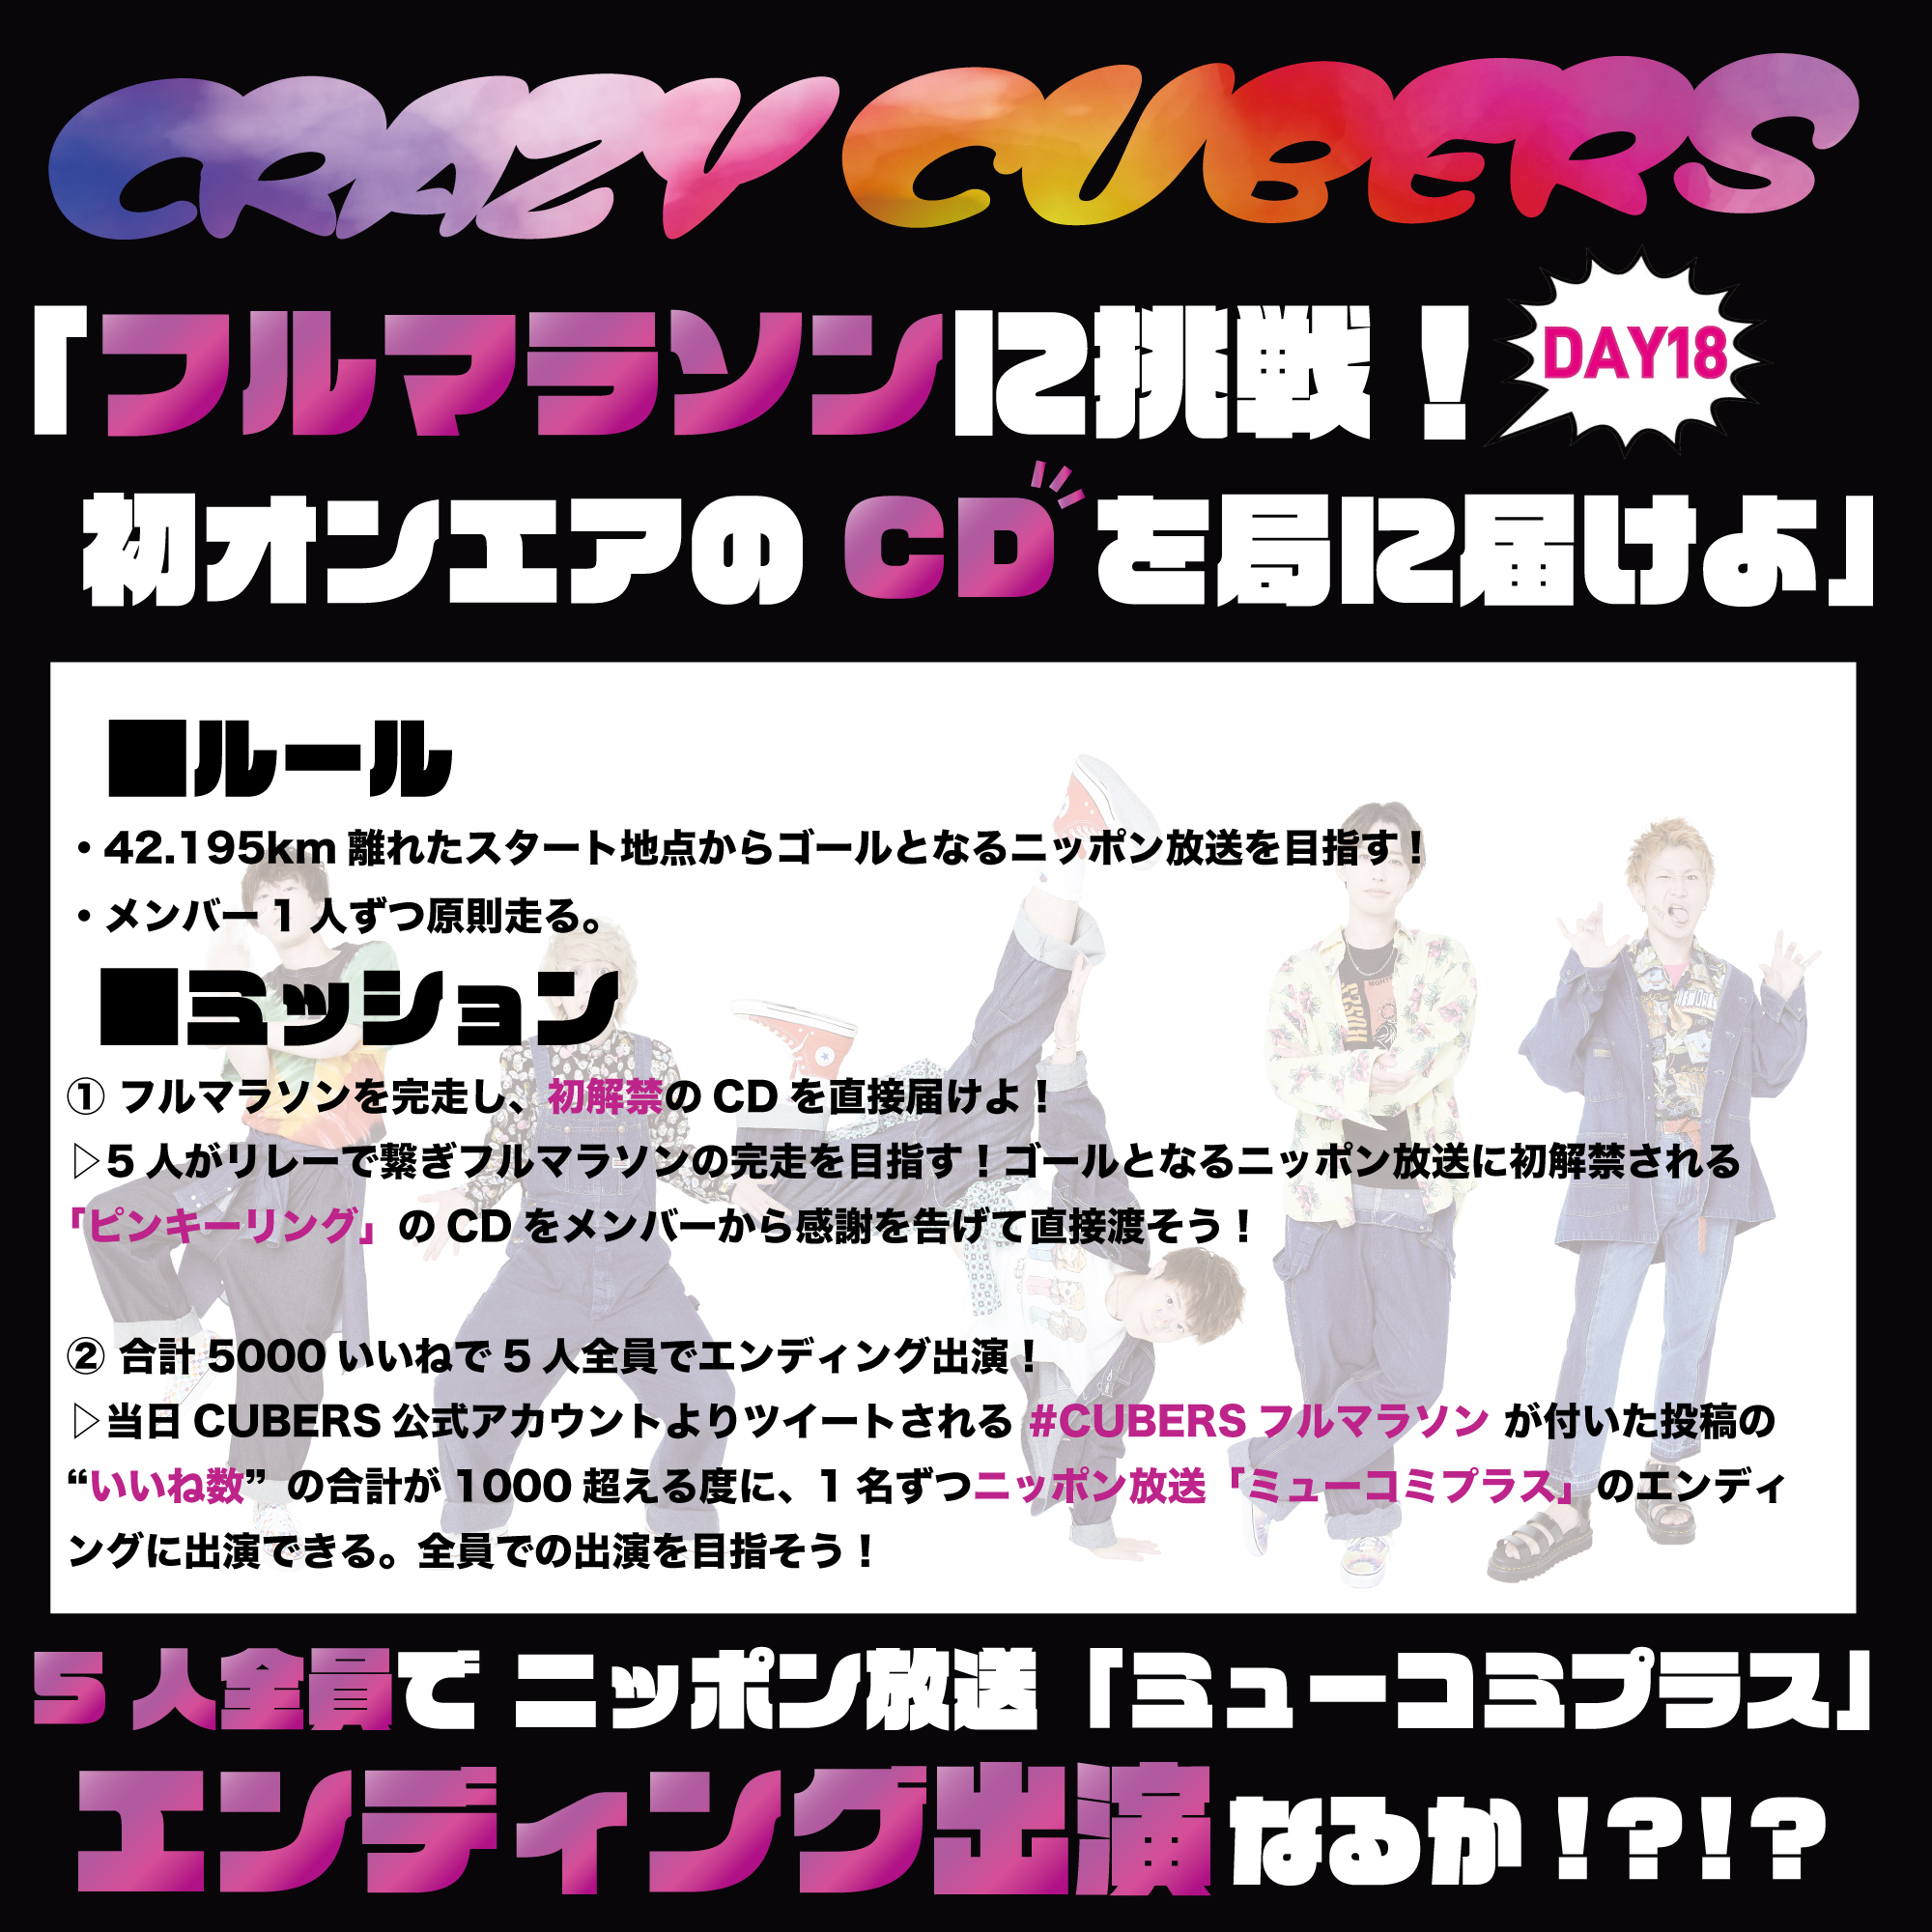 【NEWS】9/29(火) CRAZY CUBERS企画「フルマラソンに挑戦！初オンエアのCD局に届けよ」実施！